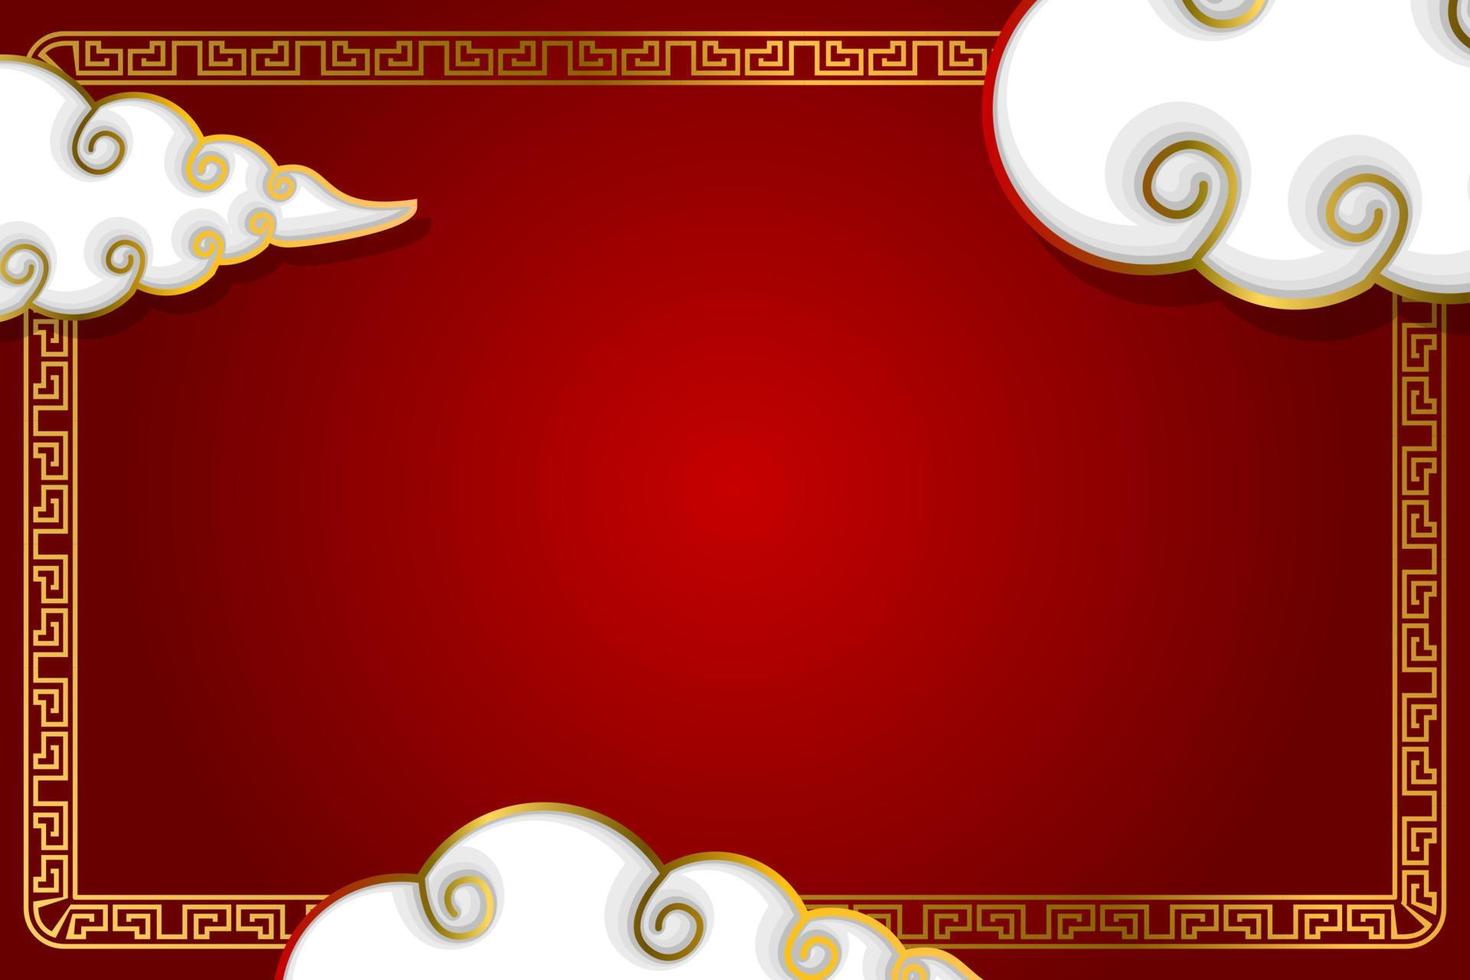 chinesisches neujahrskonzept mit kopienraumhintergrund auf rot vektor